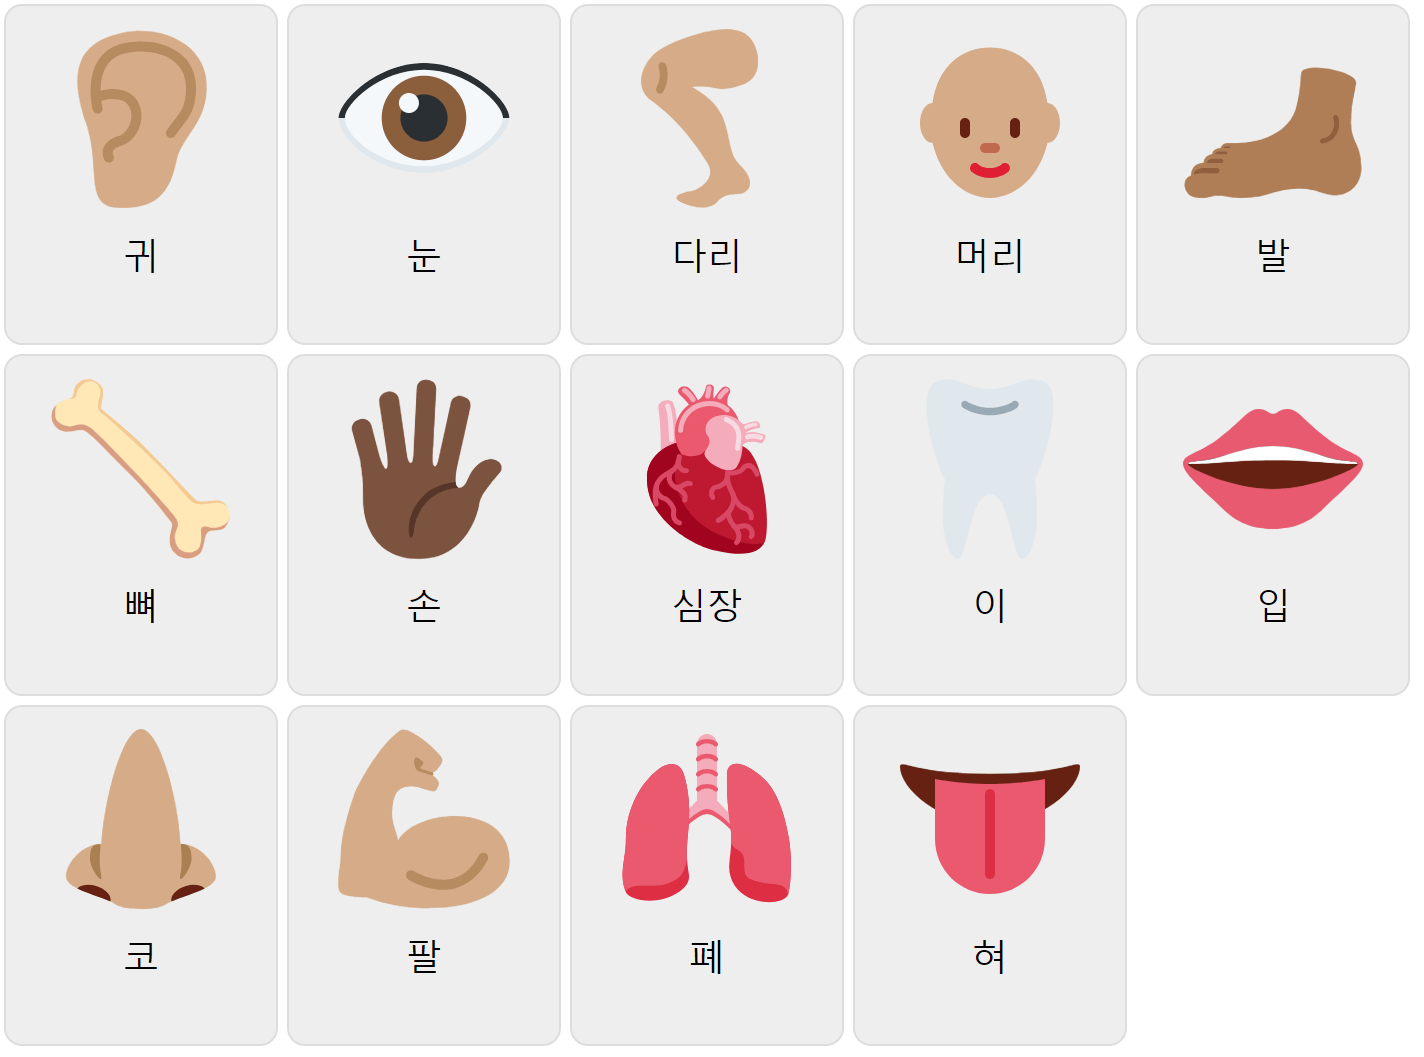 Partes del cuerpo en coreano